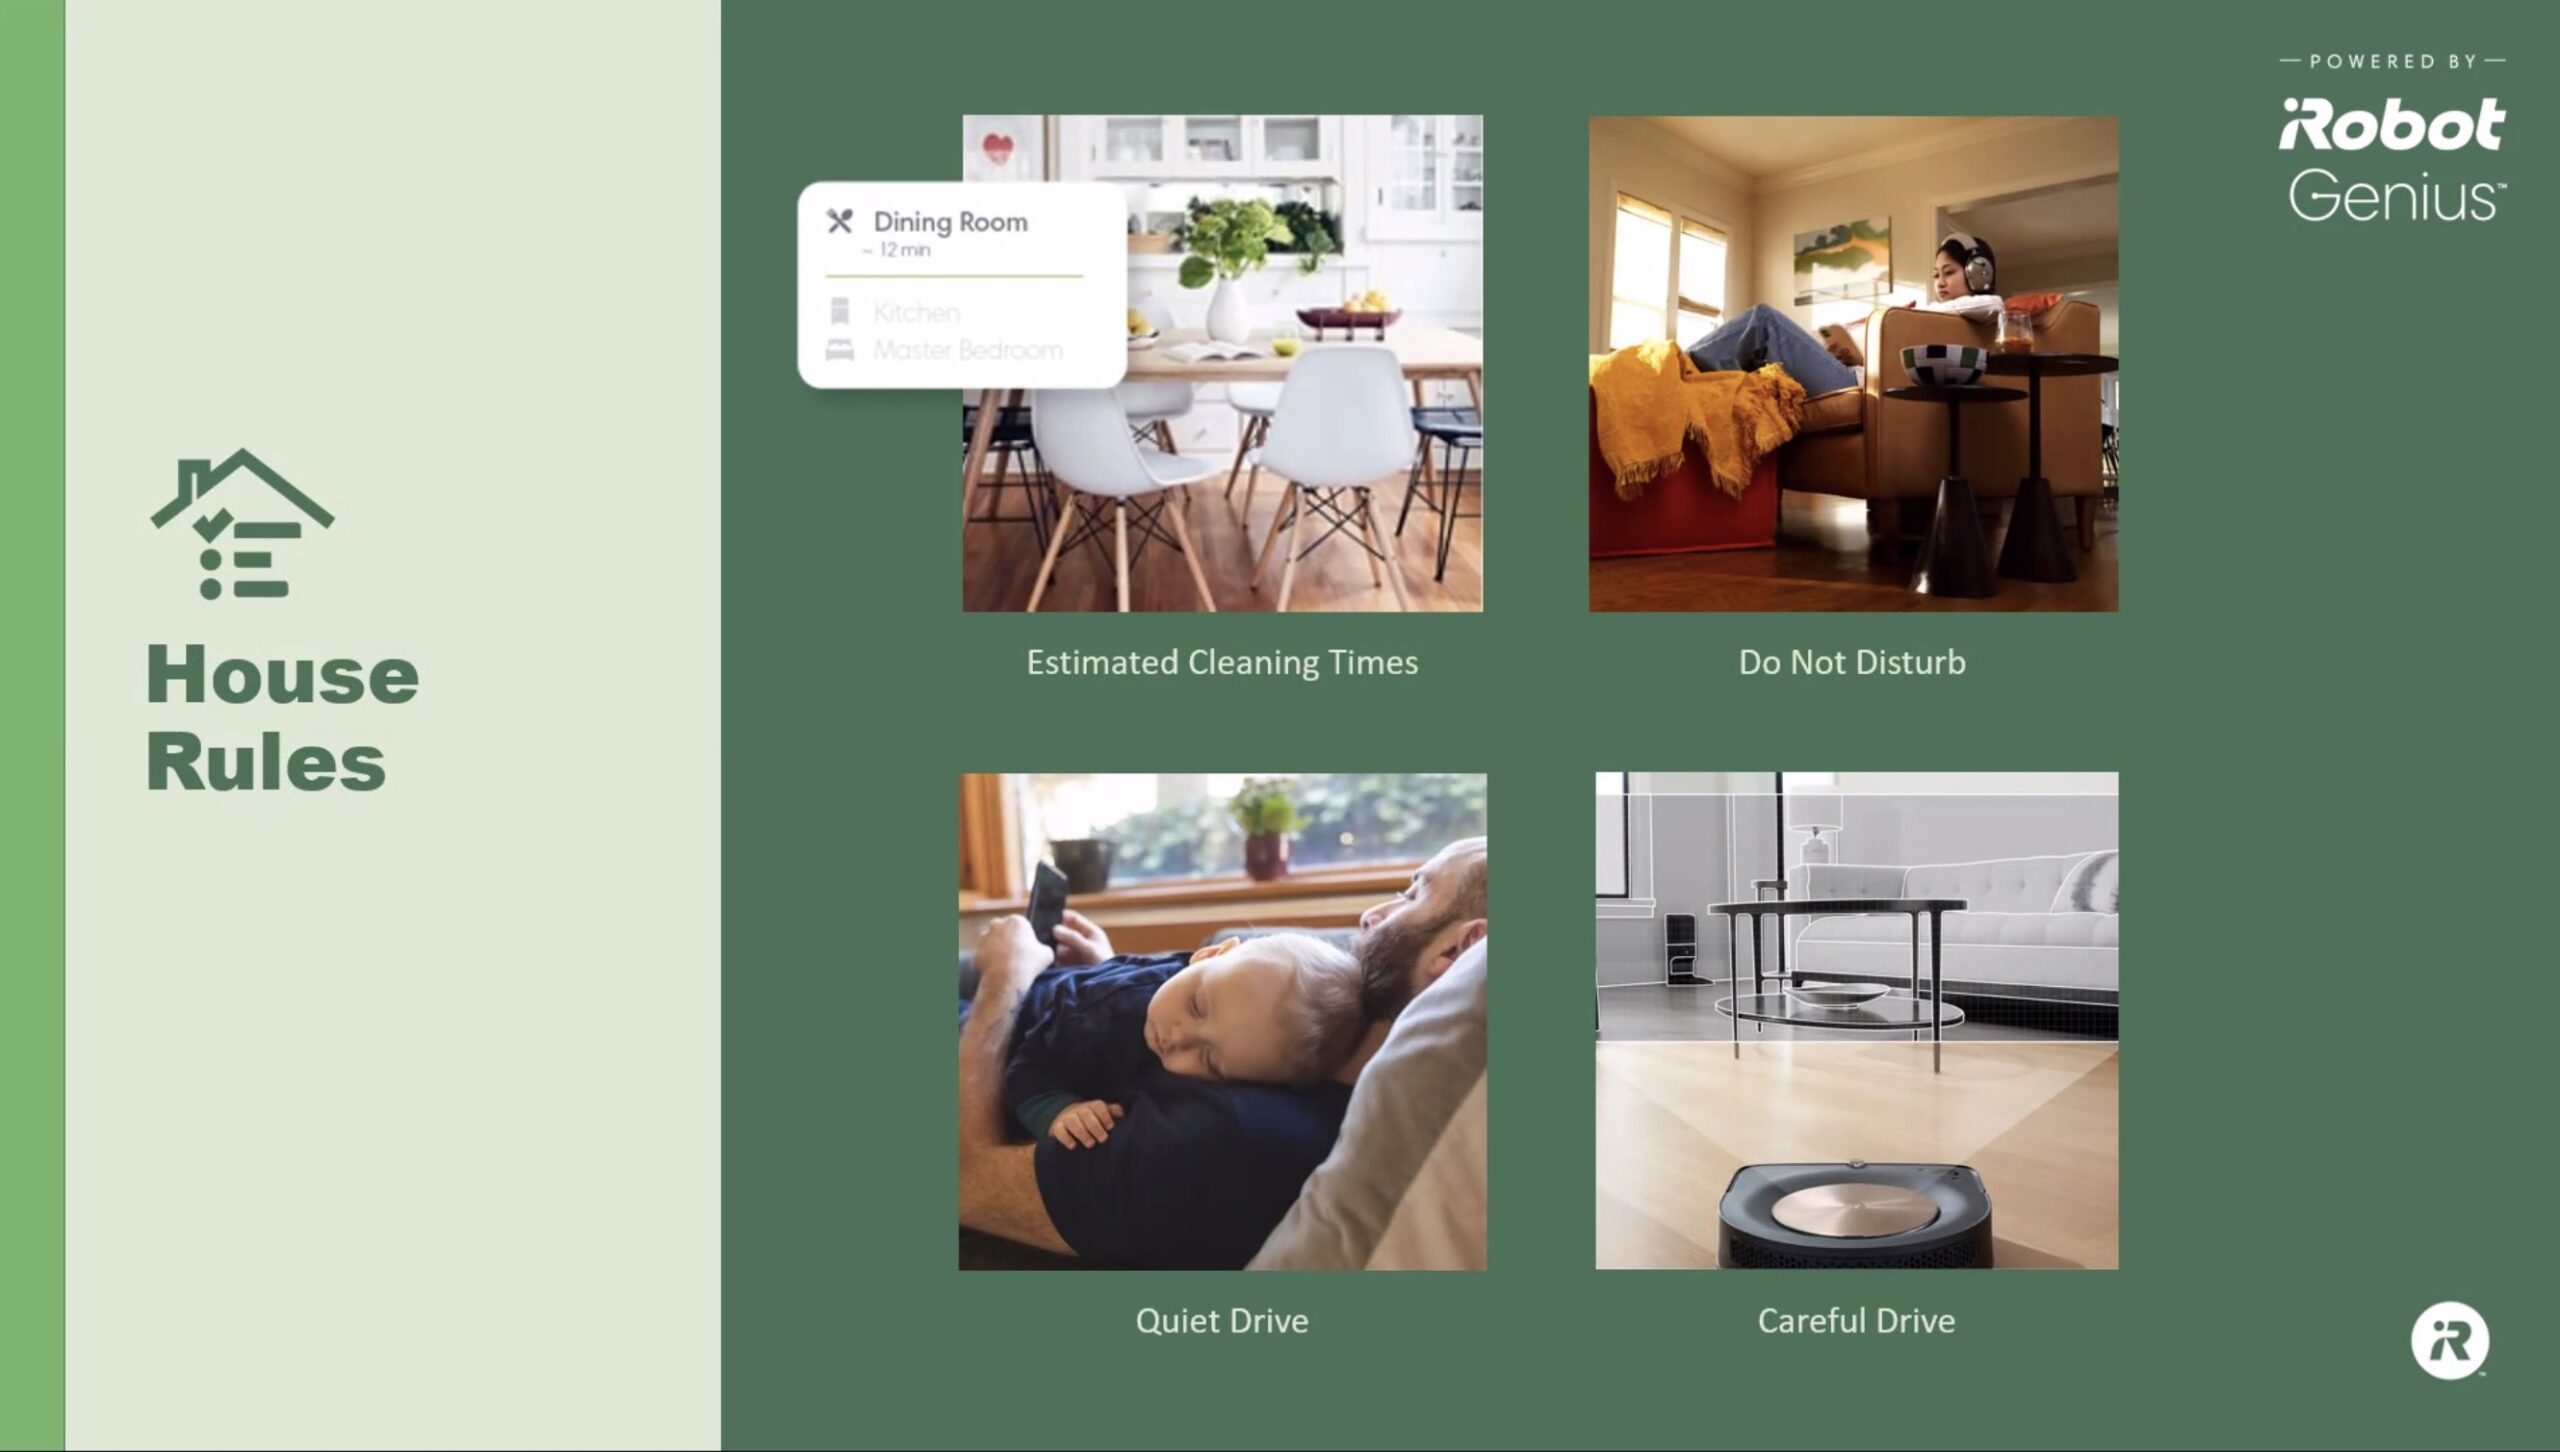 iRobot Home Intelligence 3.0, sempre più semplice dialogare con Roomba e Brava